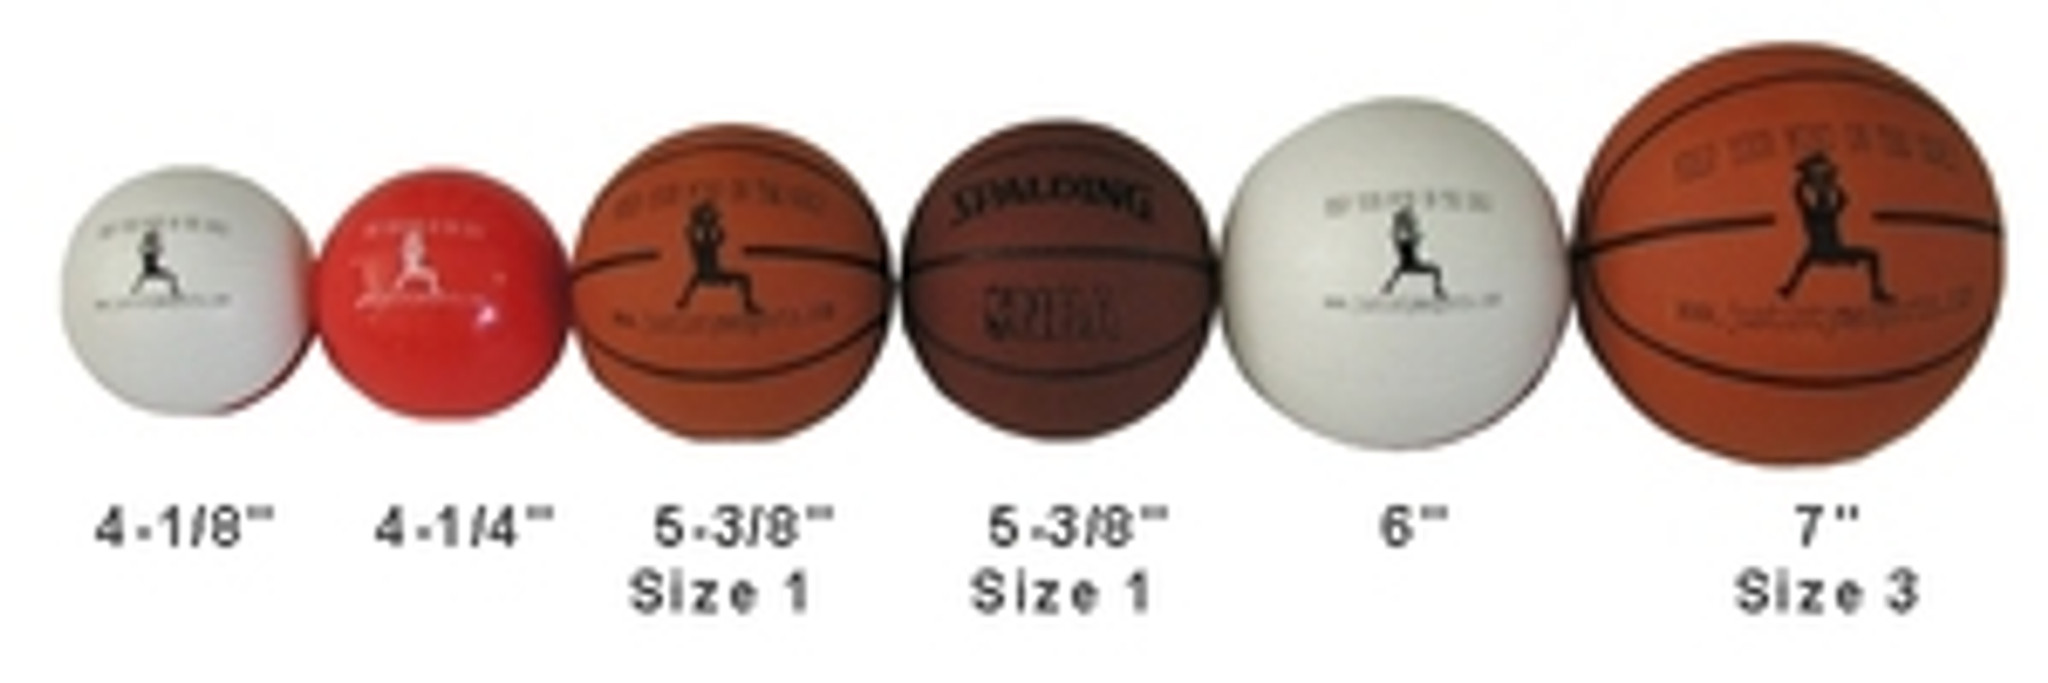 7 in. Mini Basketball